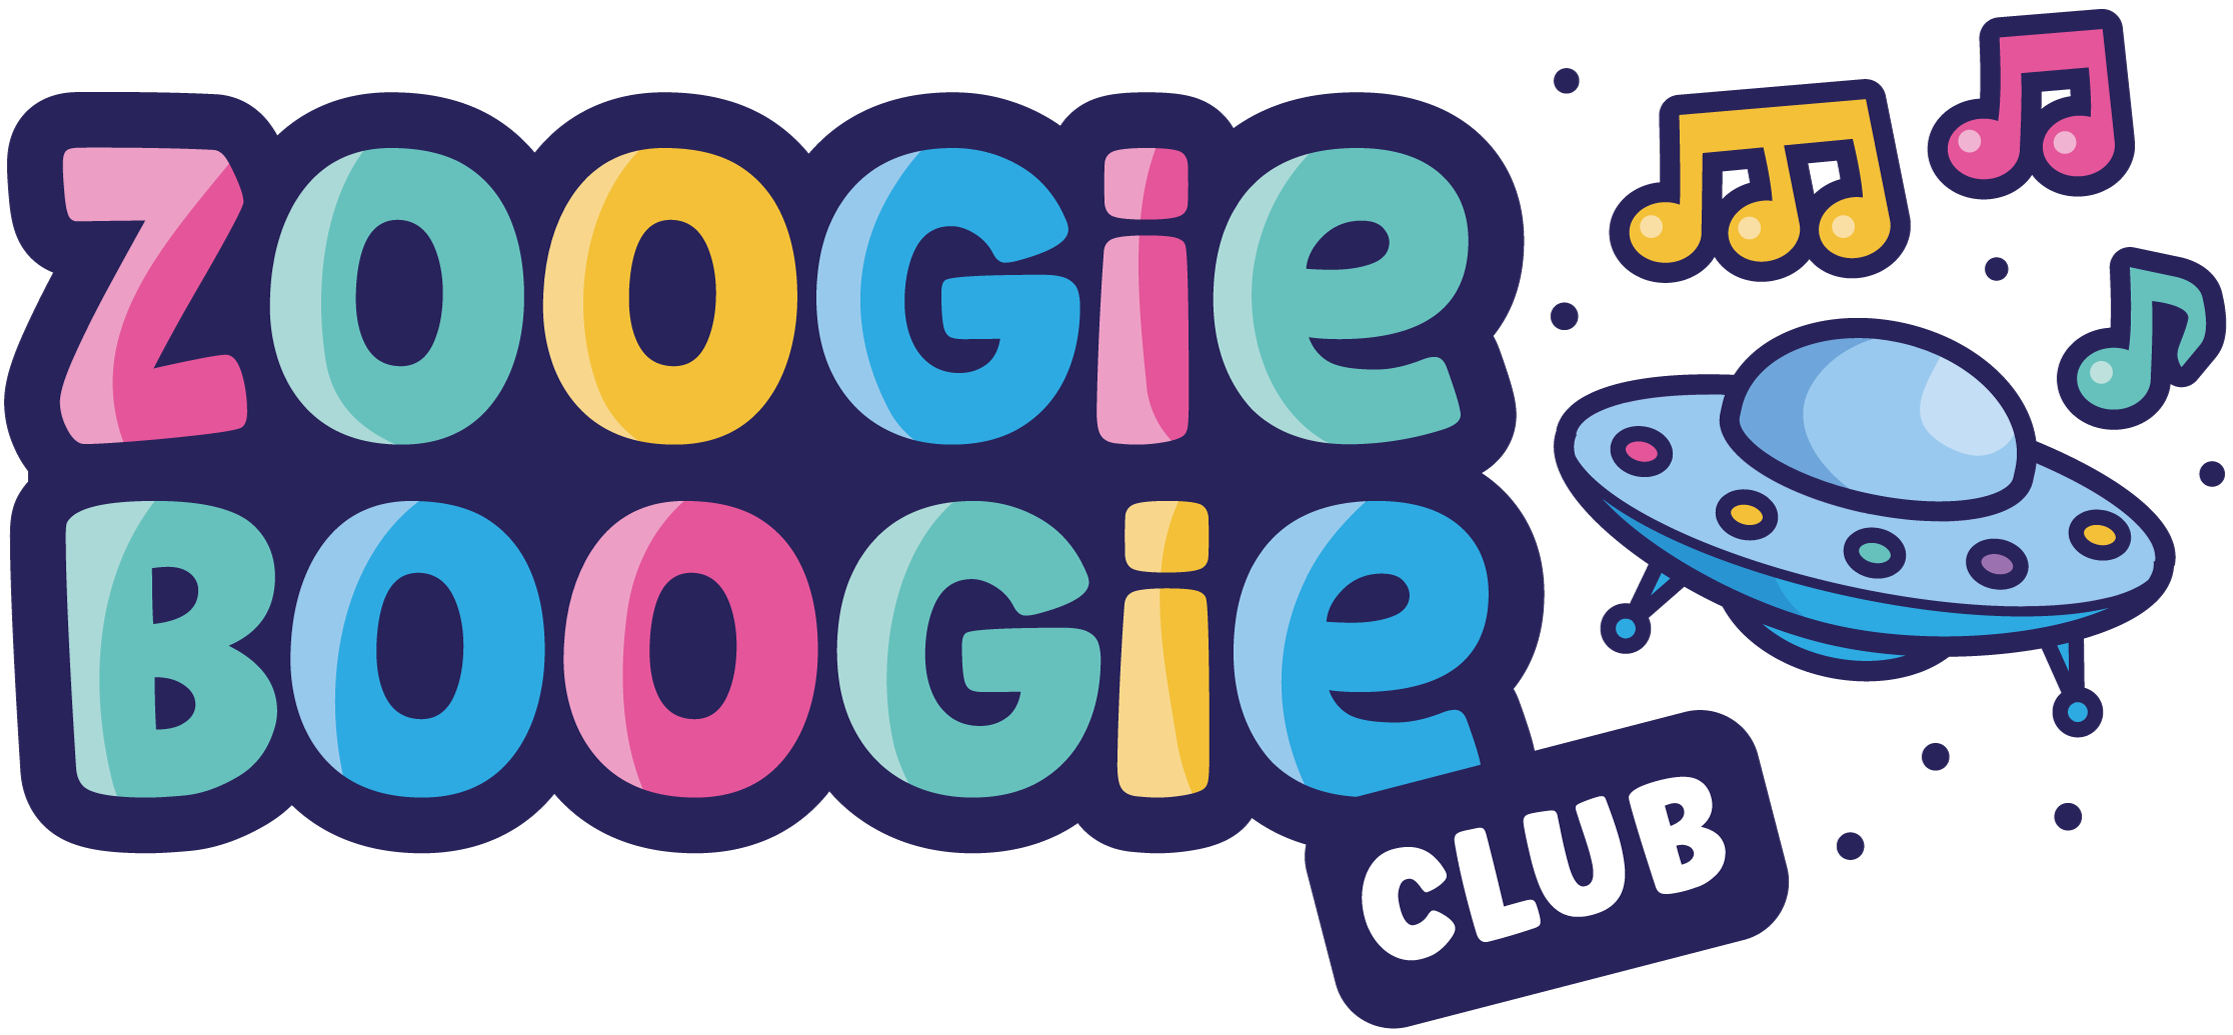 SHOW SPONSOR: The Zoogie Boogie Club